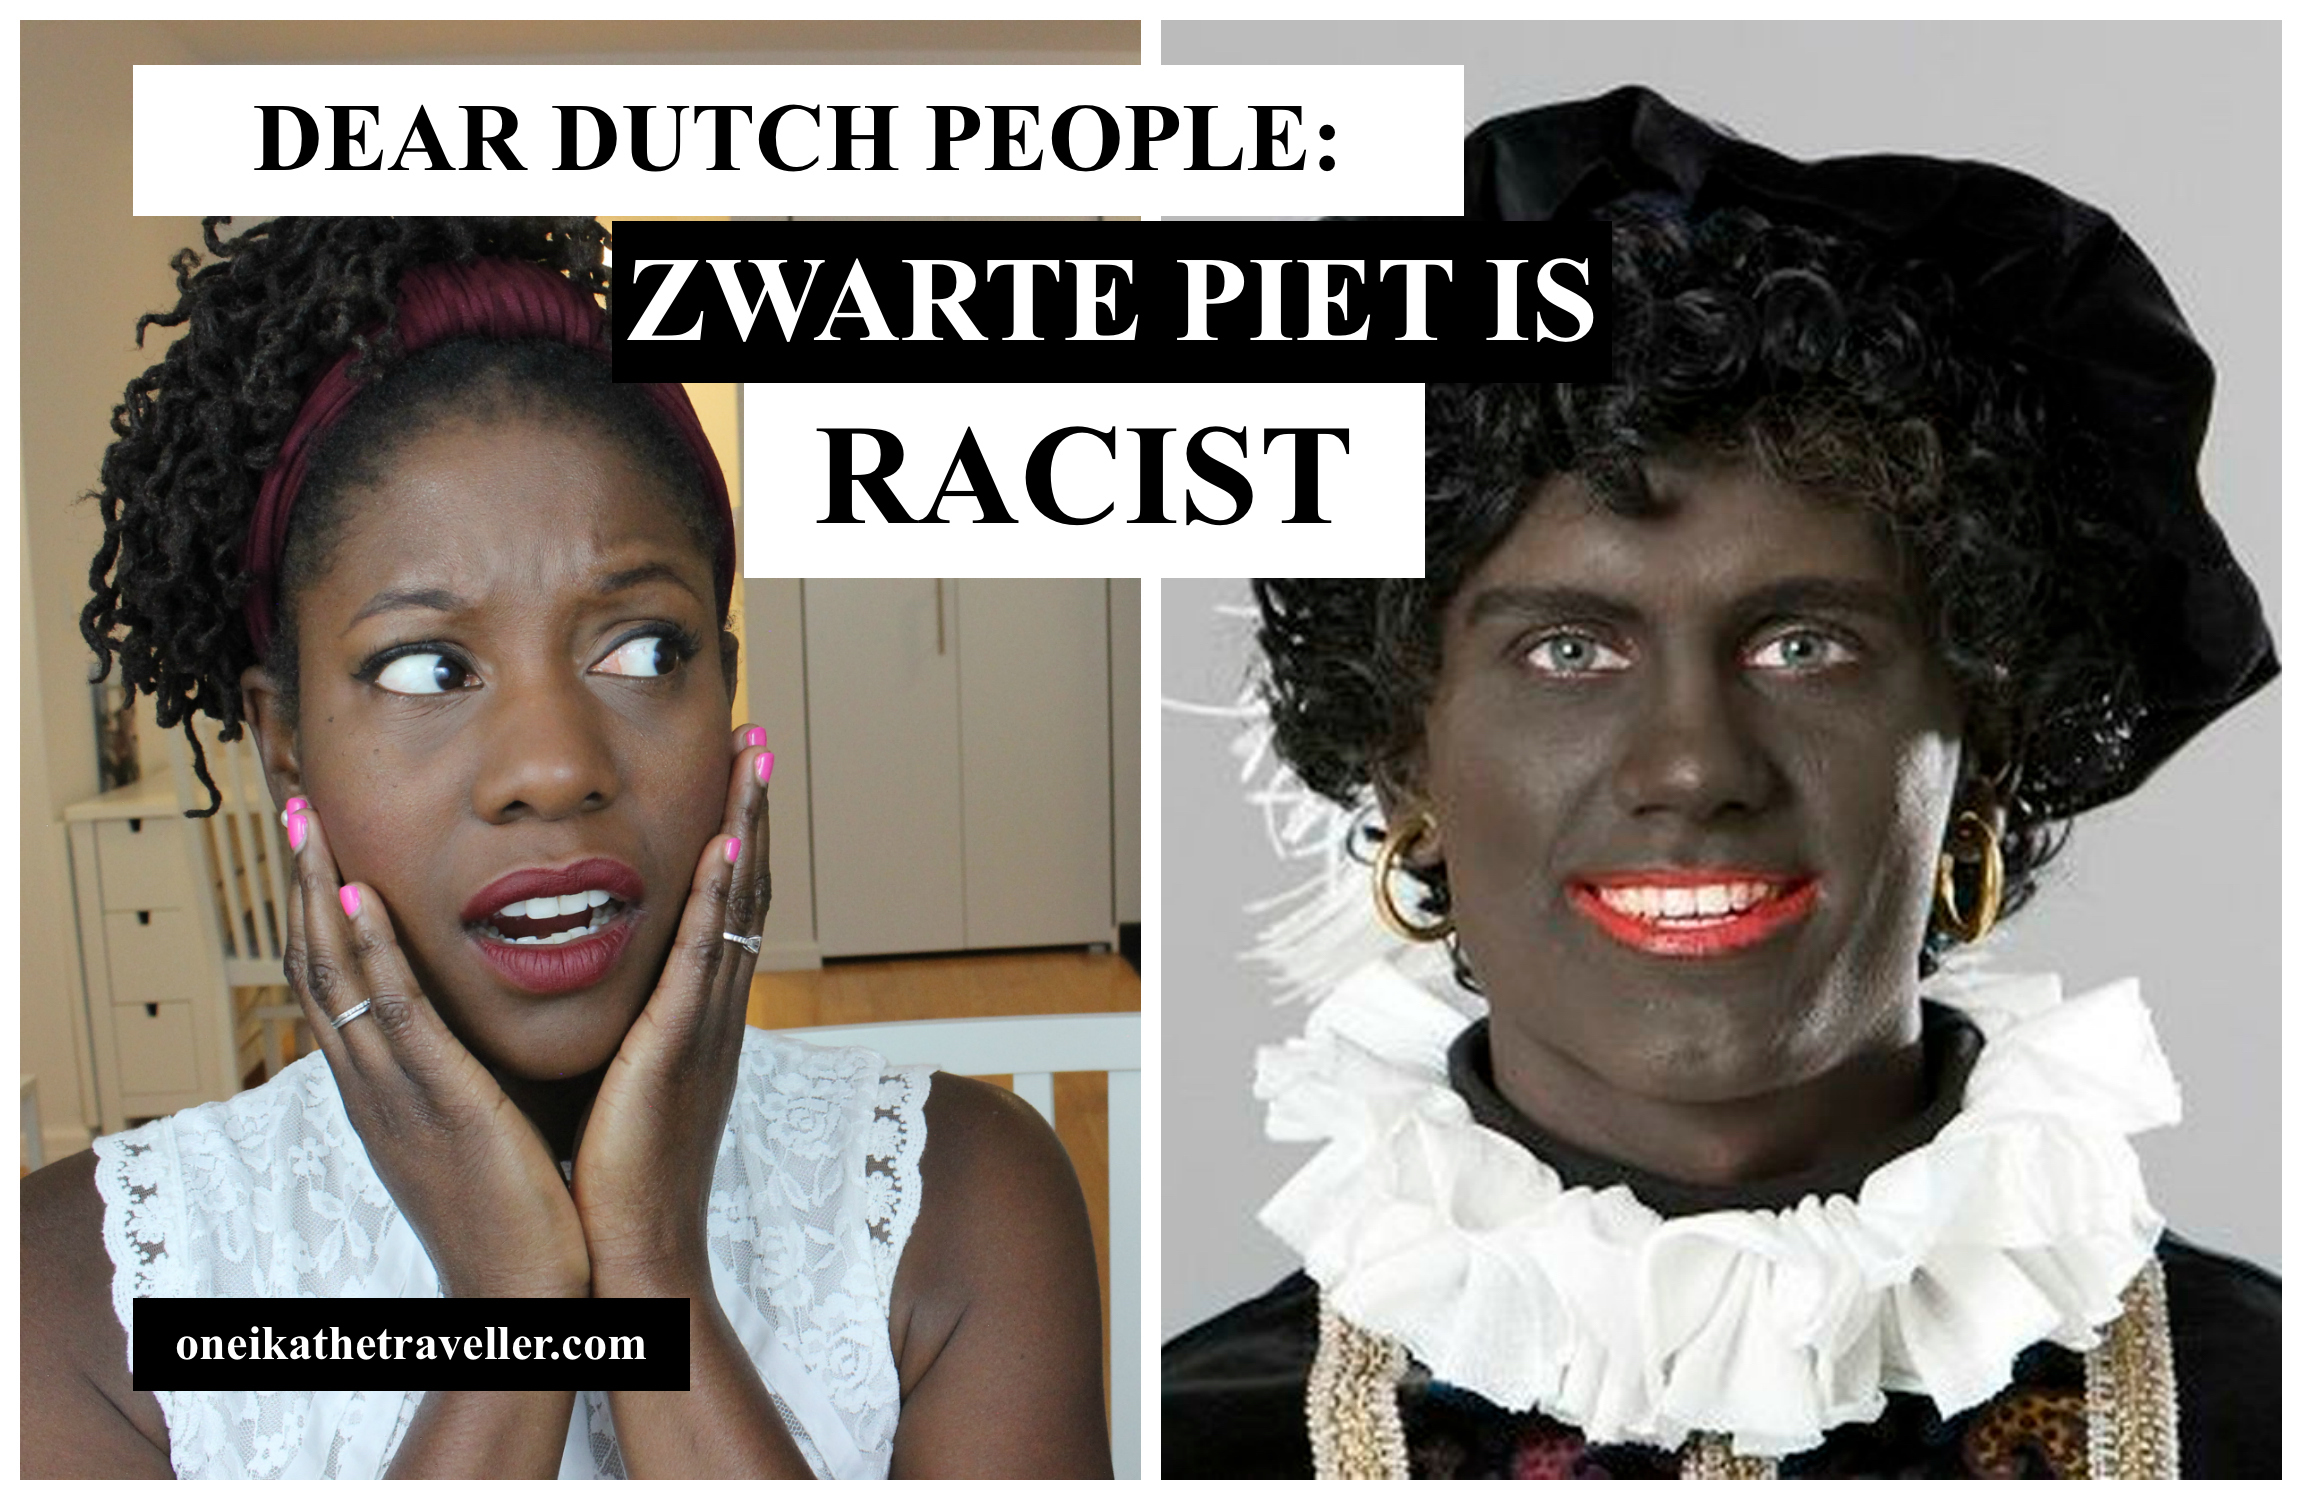 zwarte piet is racist blackface